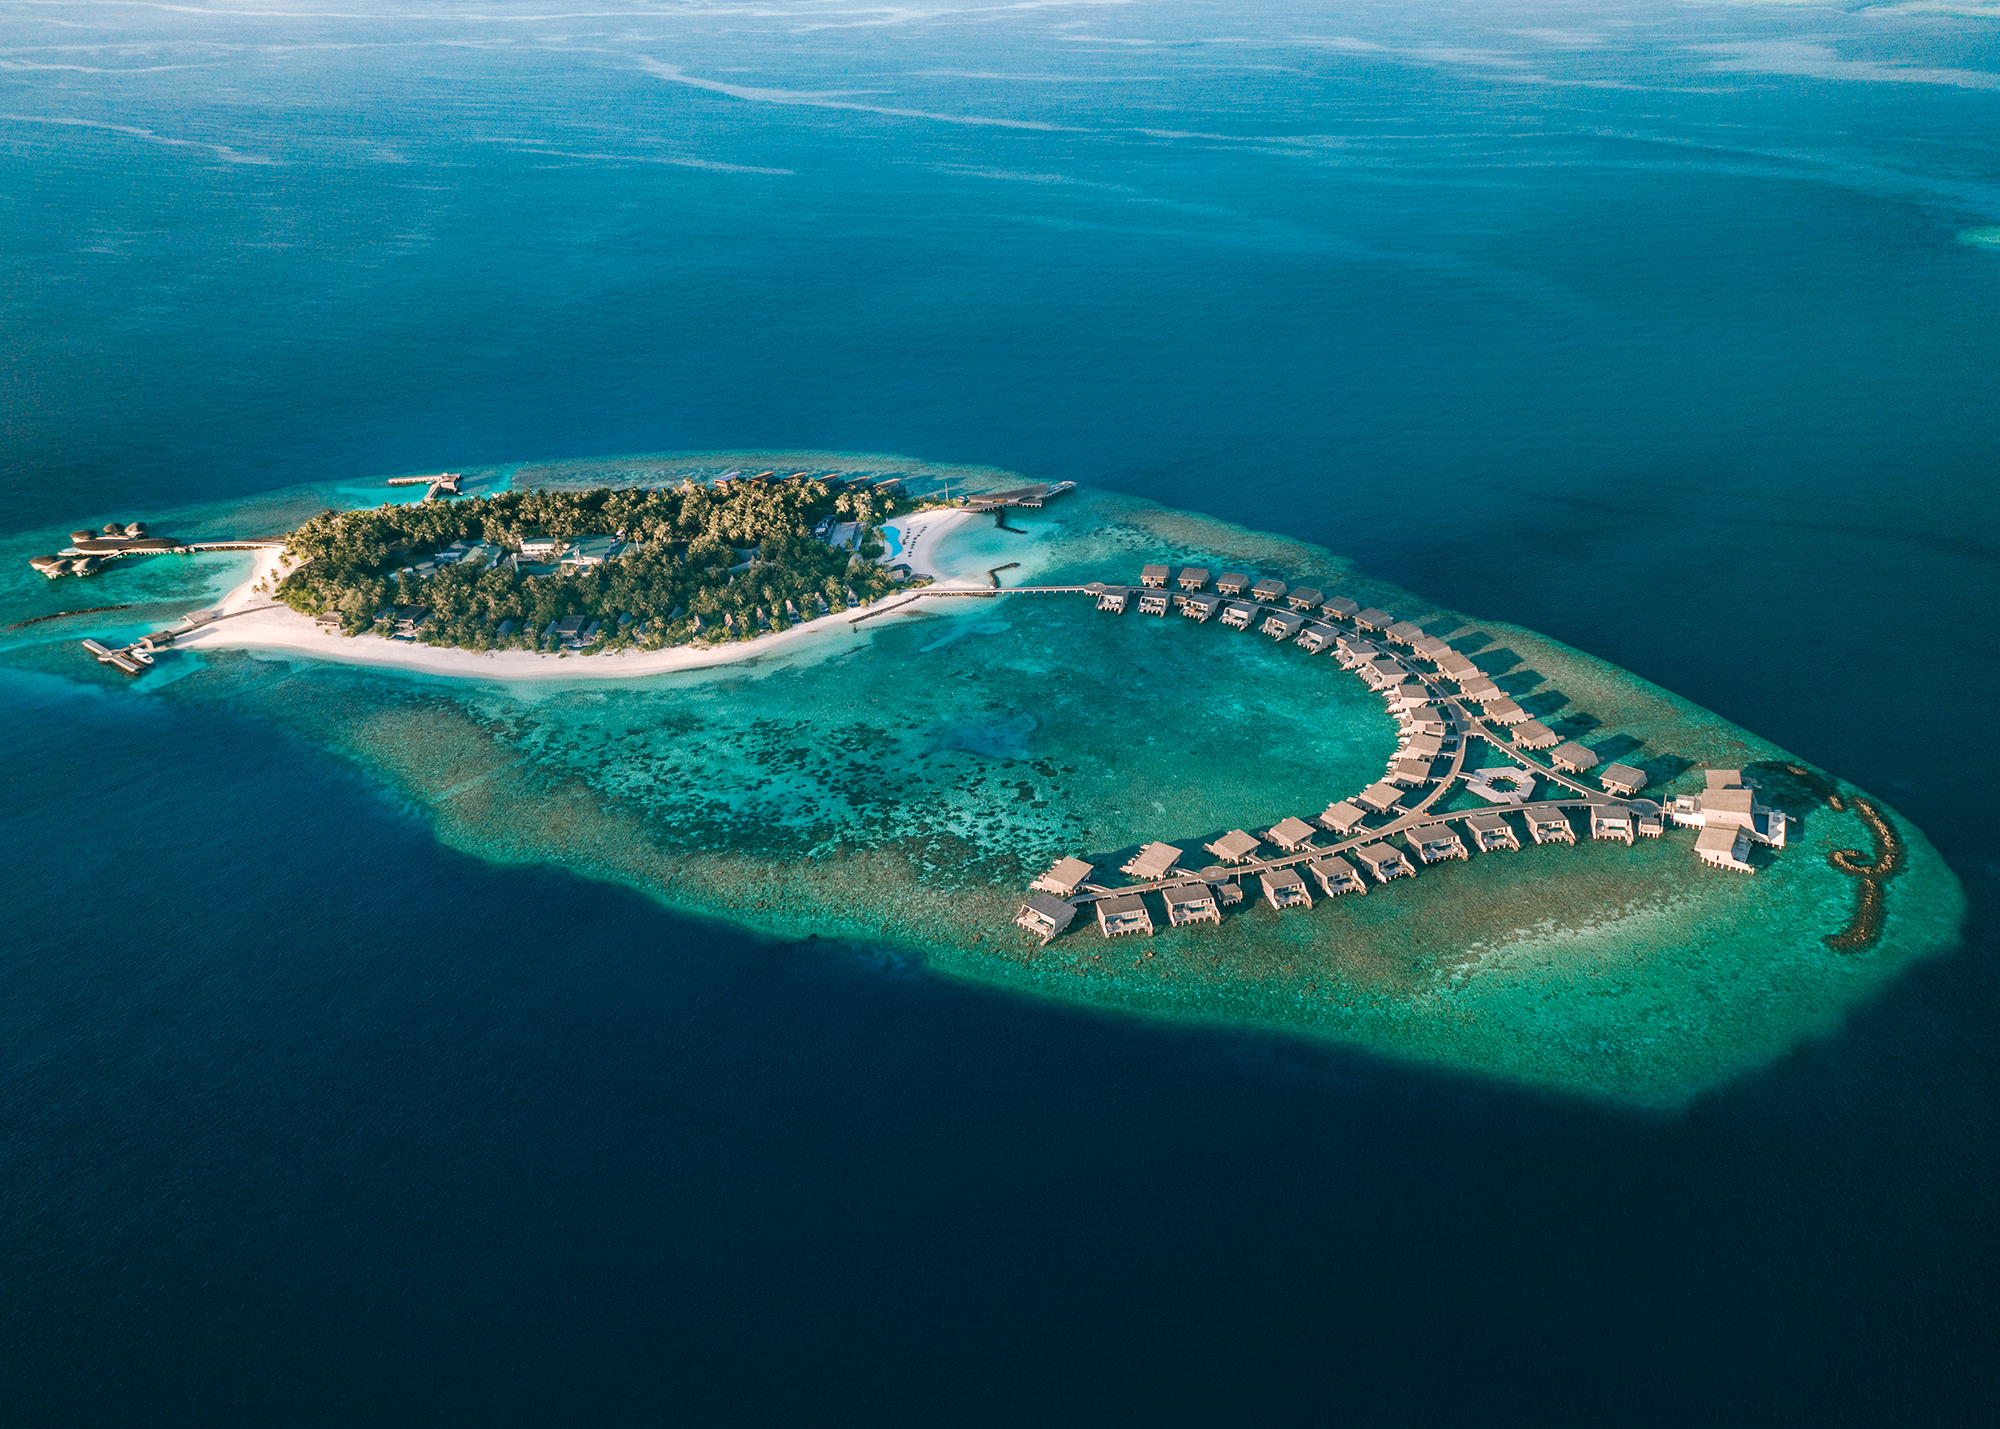 Luxury hotels and resorts - The St. Regis Maldives Vommuli Resort